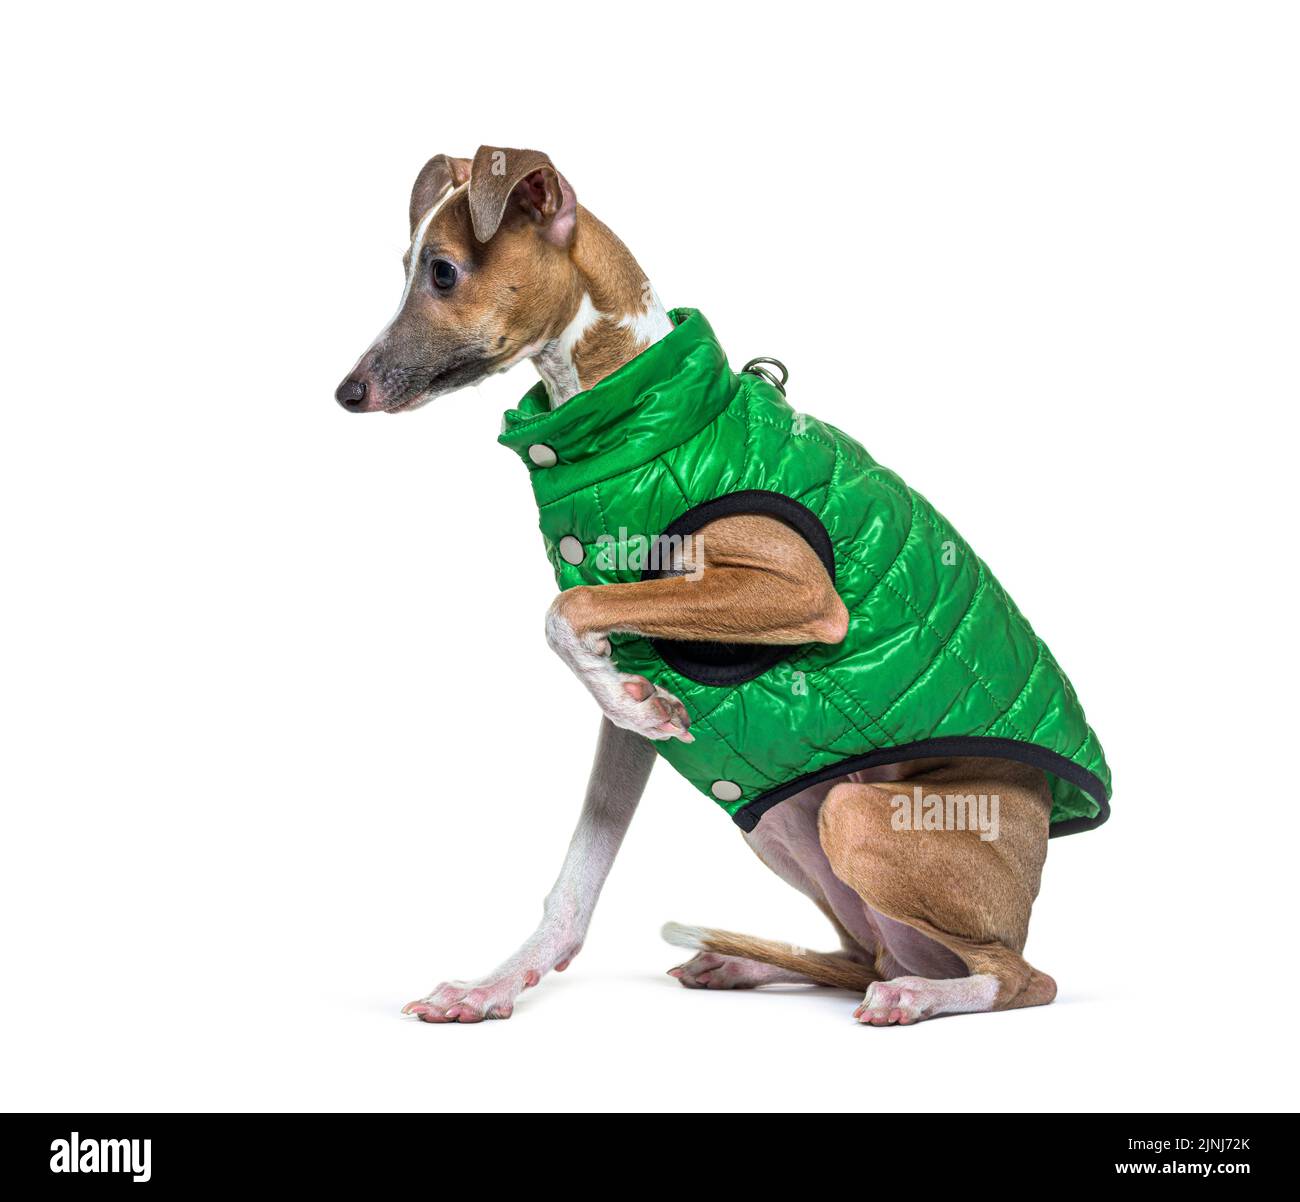 Italienischer Greyhound trägt einen grünen Mantel, isoliert auf weiß Stockfoto